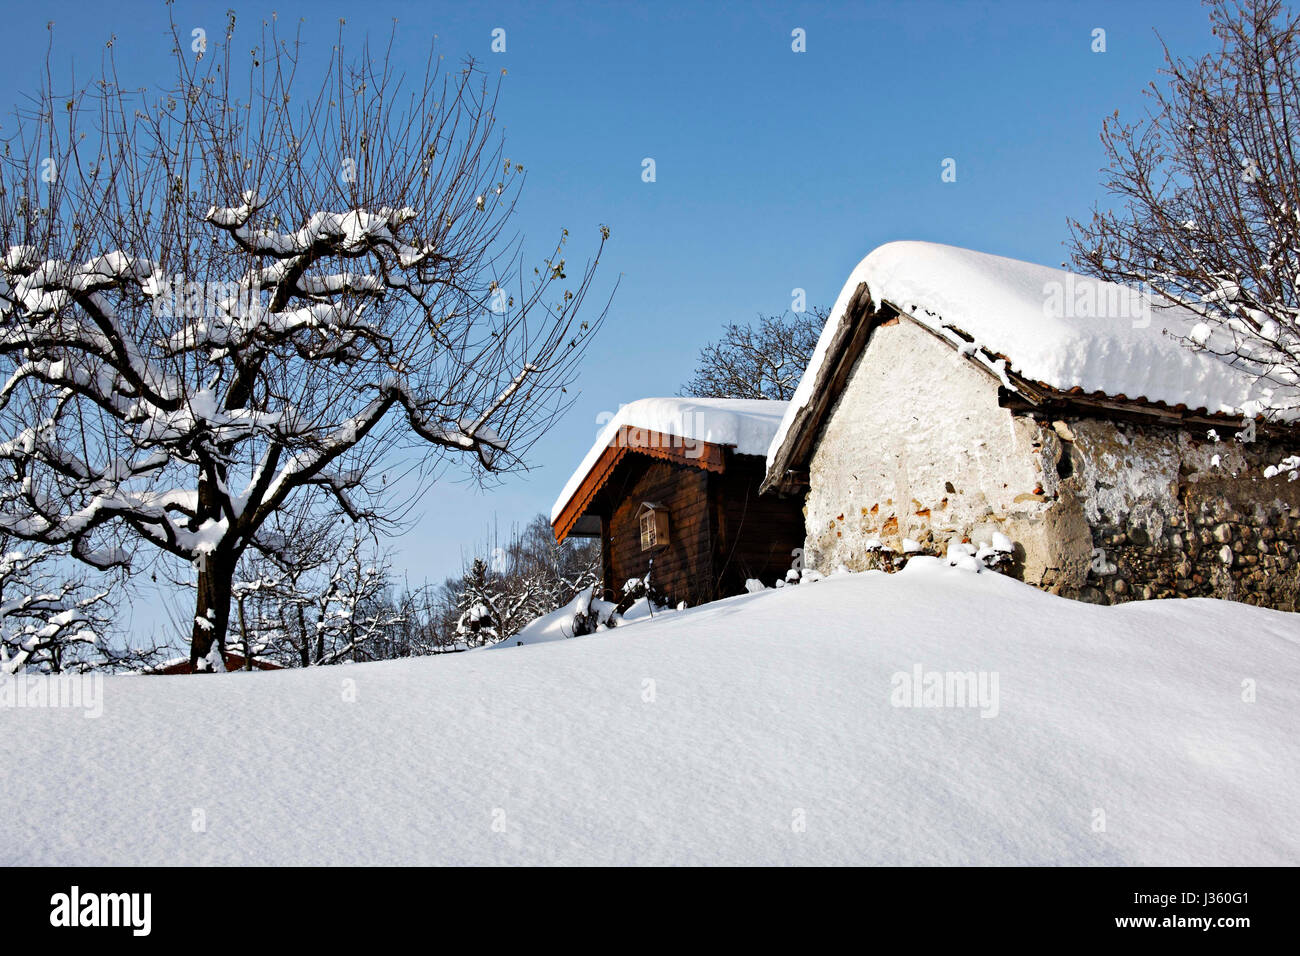 Vieille cabane de pierres couvertes de neige, Chiemgau Haute-bavière Allemagne Europe Banque D'Images